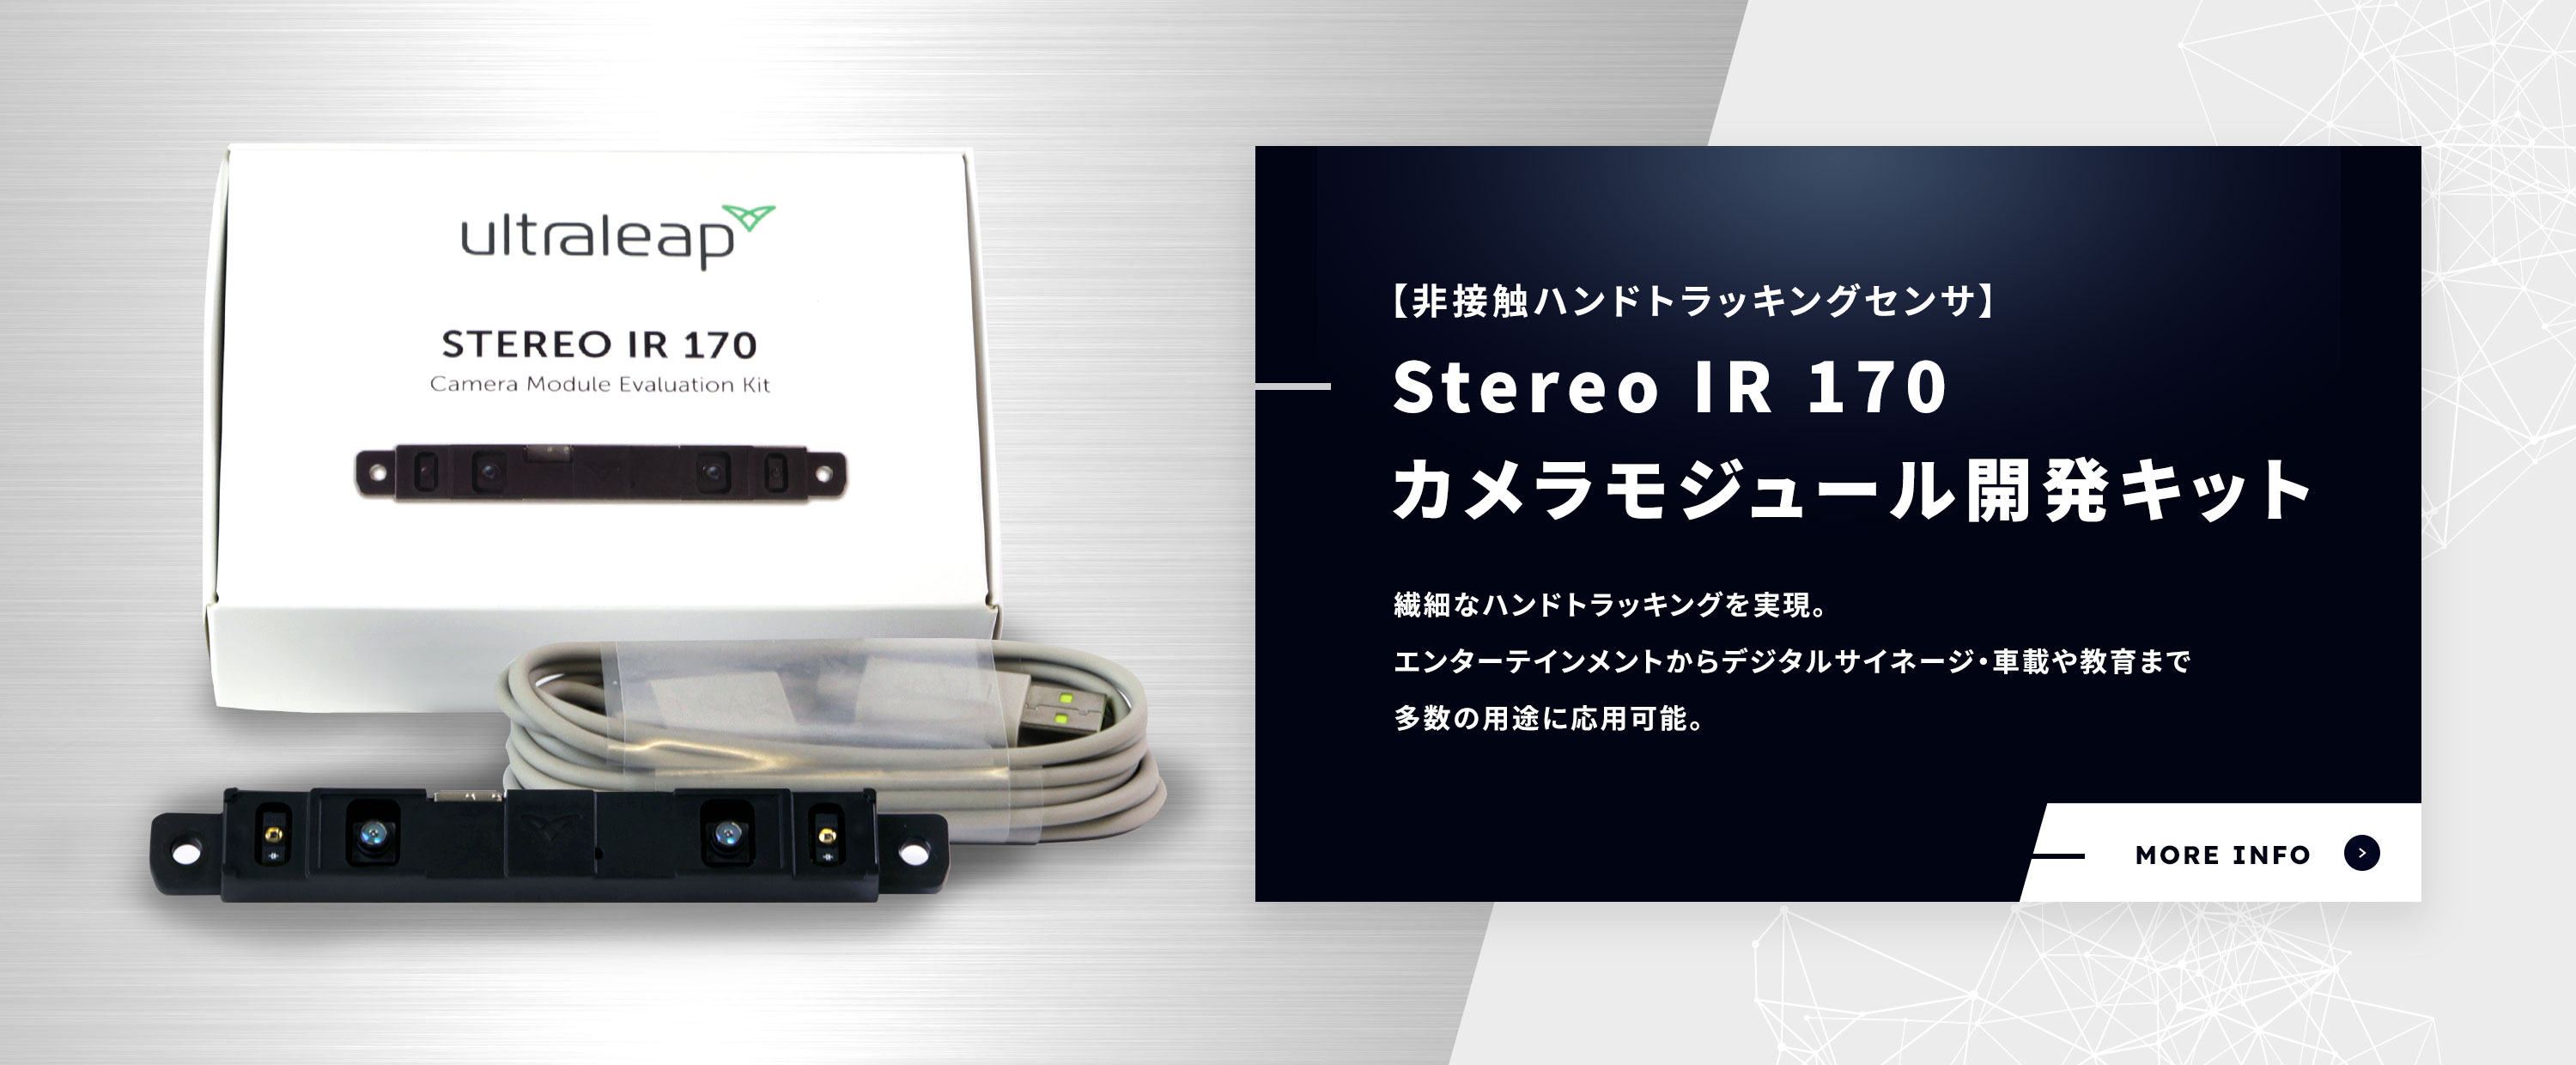 【非接触ハンドトラッキングセンサ】Stereo IR 170 カメラモジュール開発キット